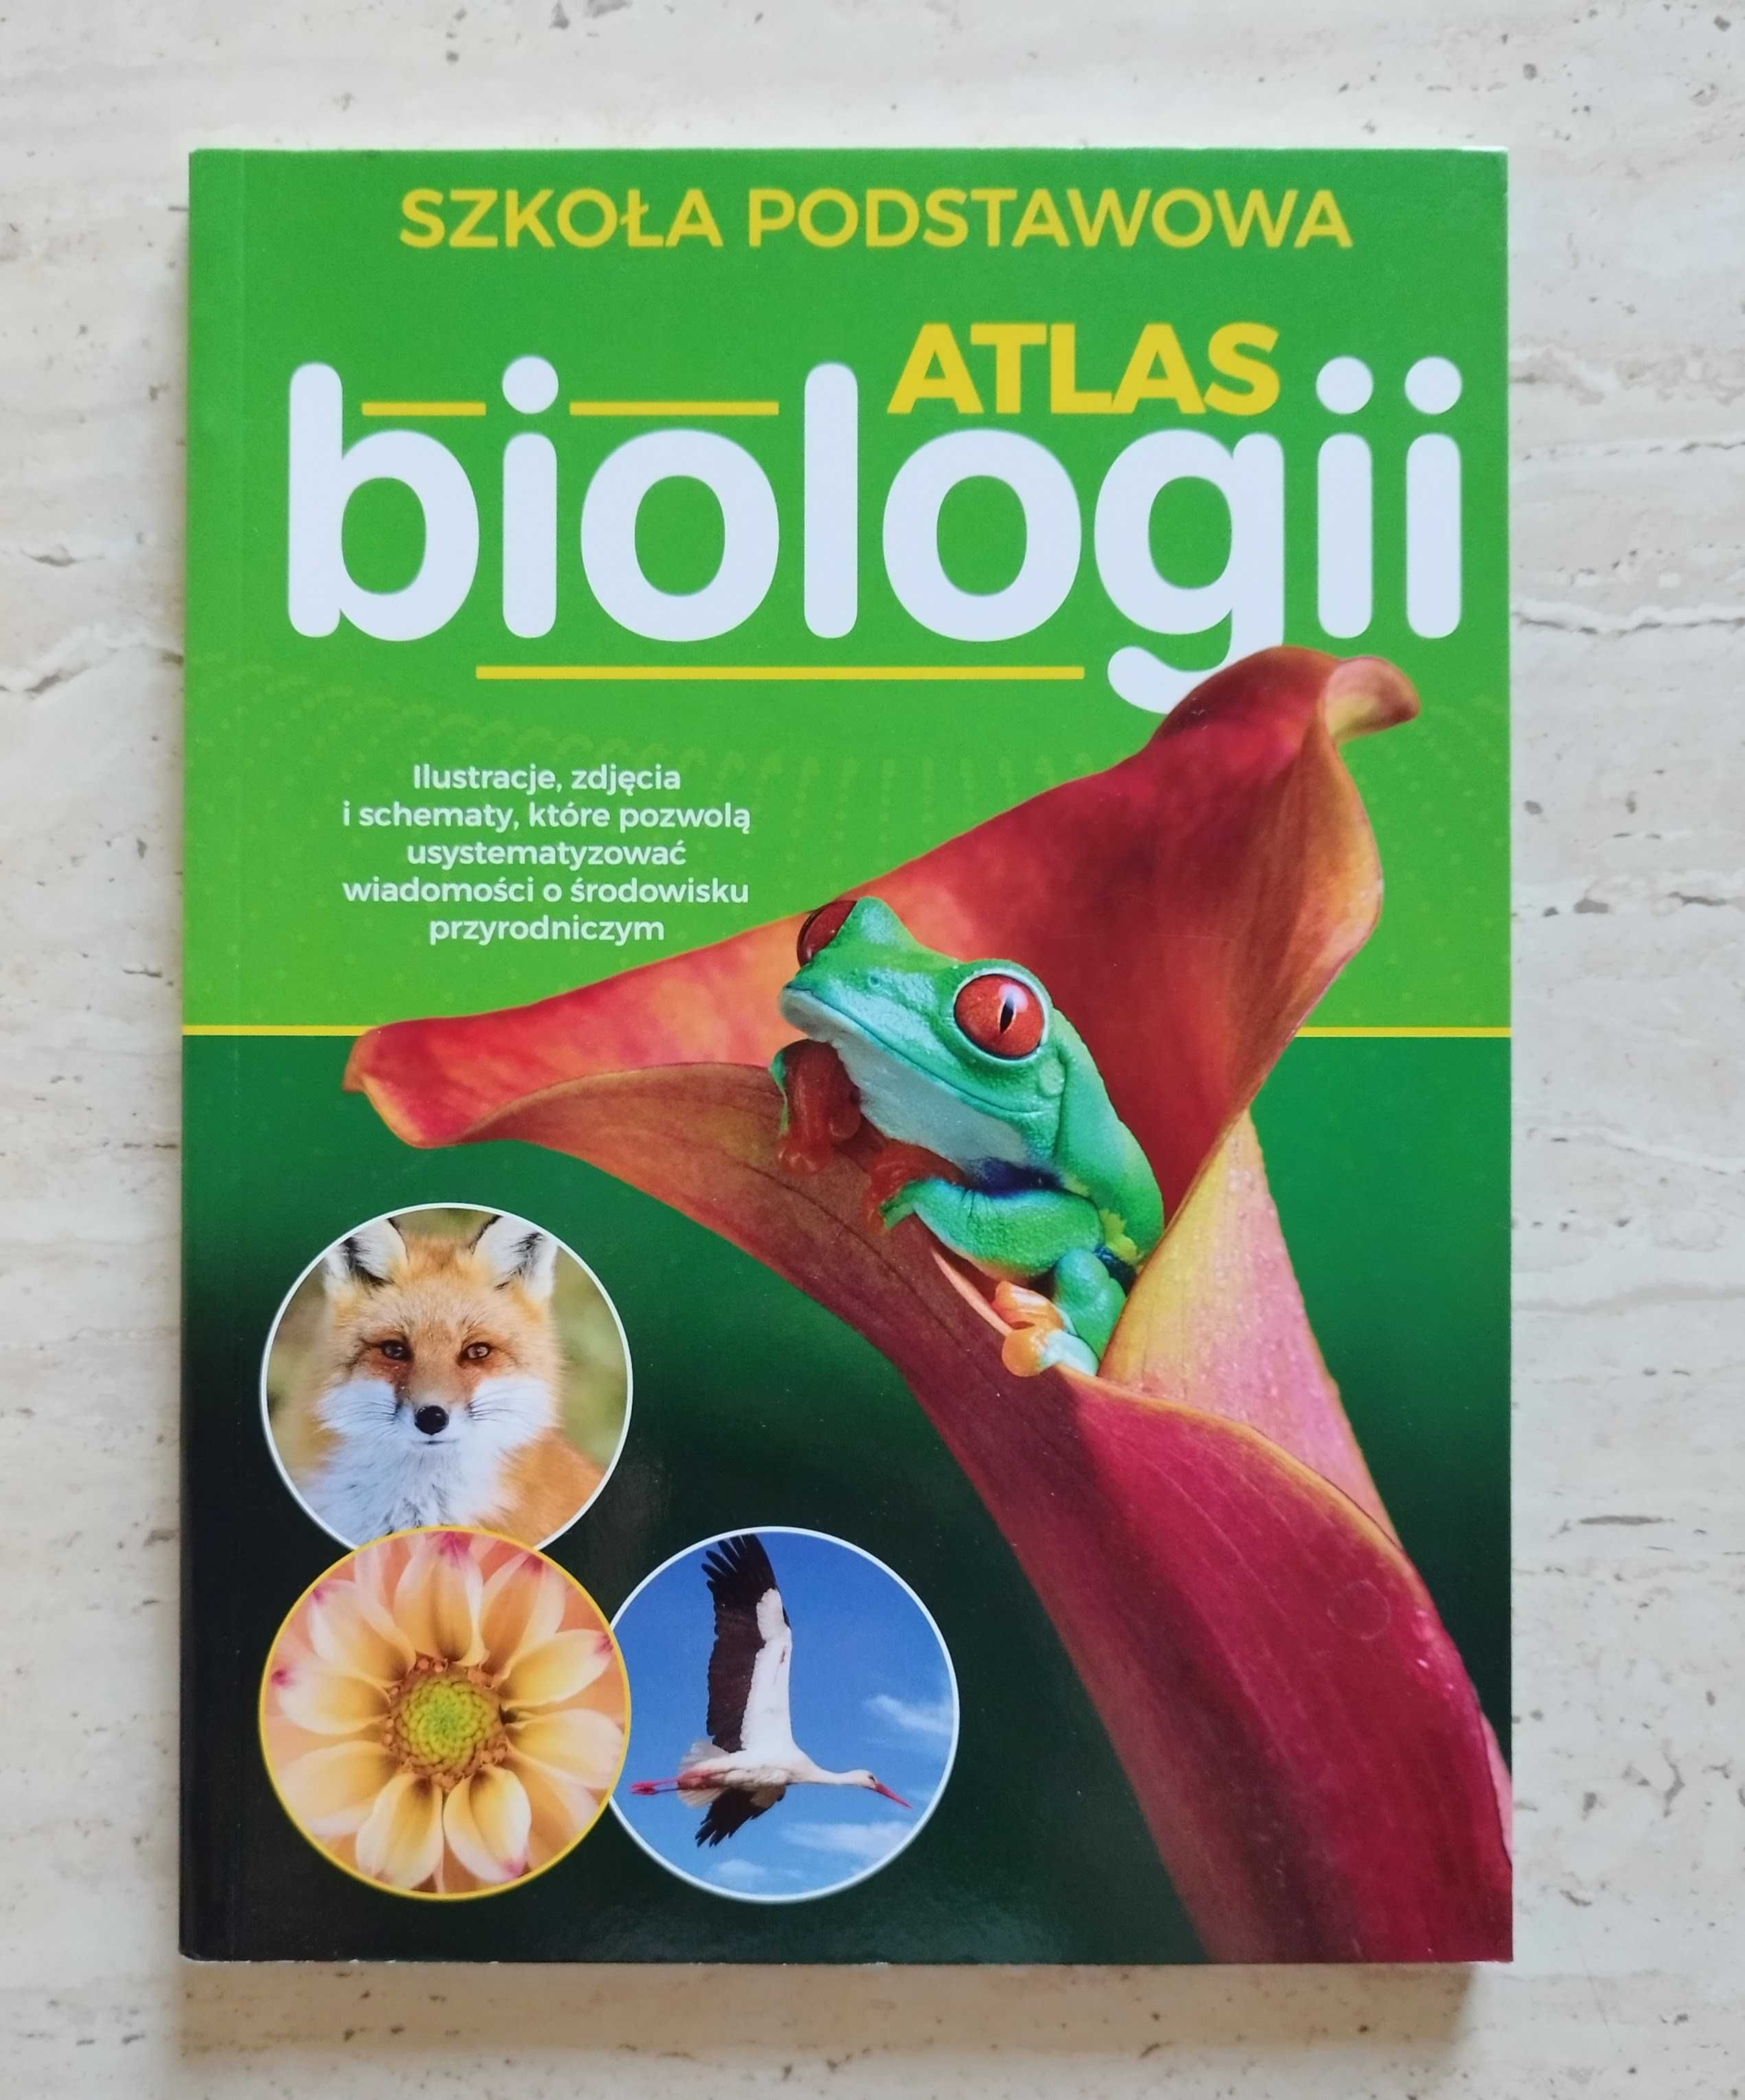 Atlas biologii. Szkoła podstawowa (nowy)